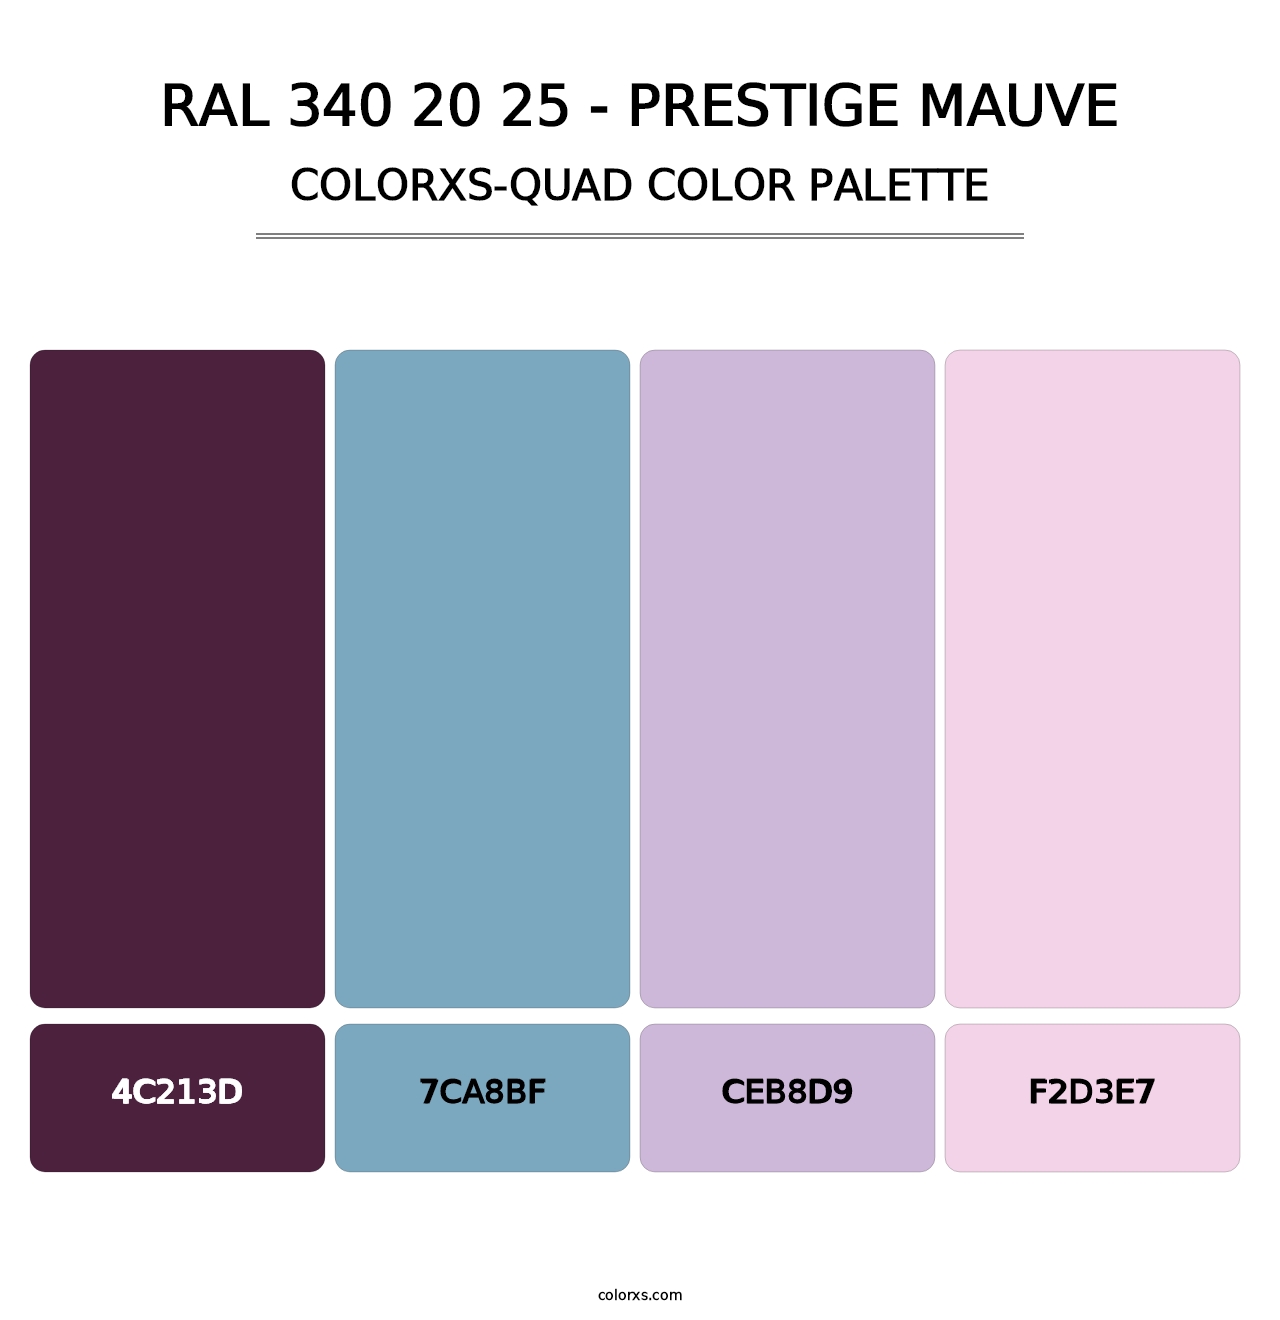 RAL 340 20 25 - Prestige Mauve - Colorxs Quad Palette